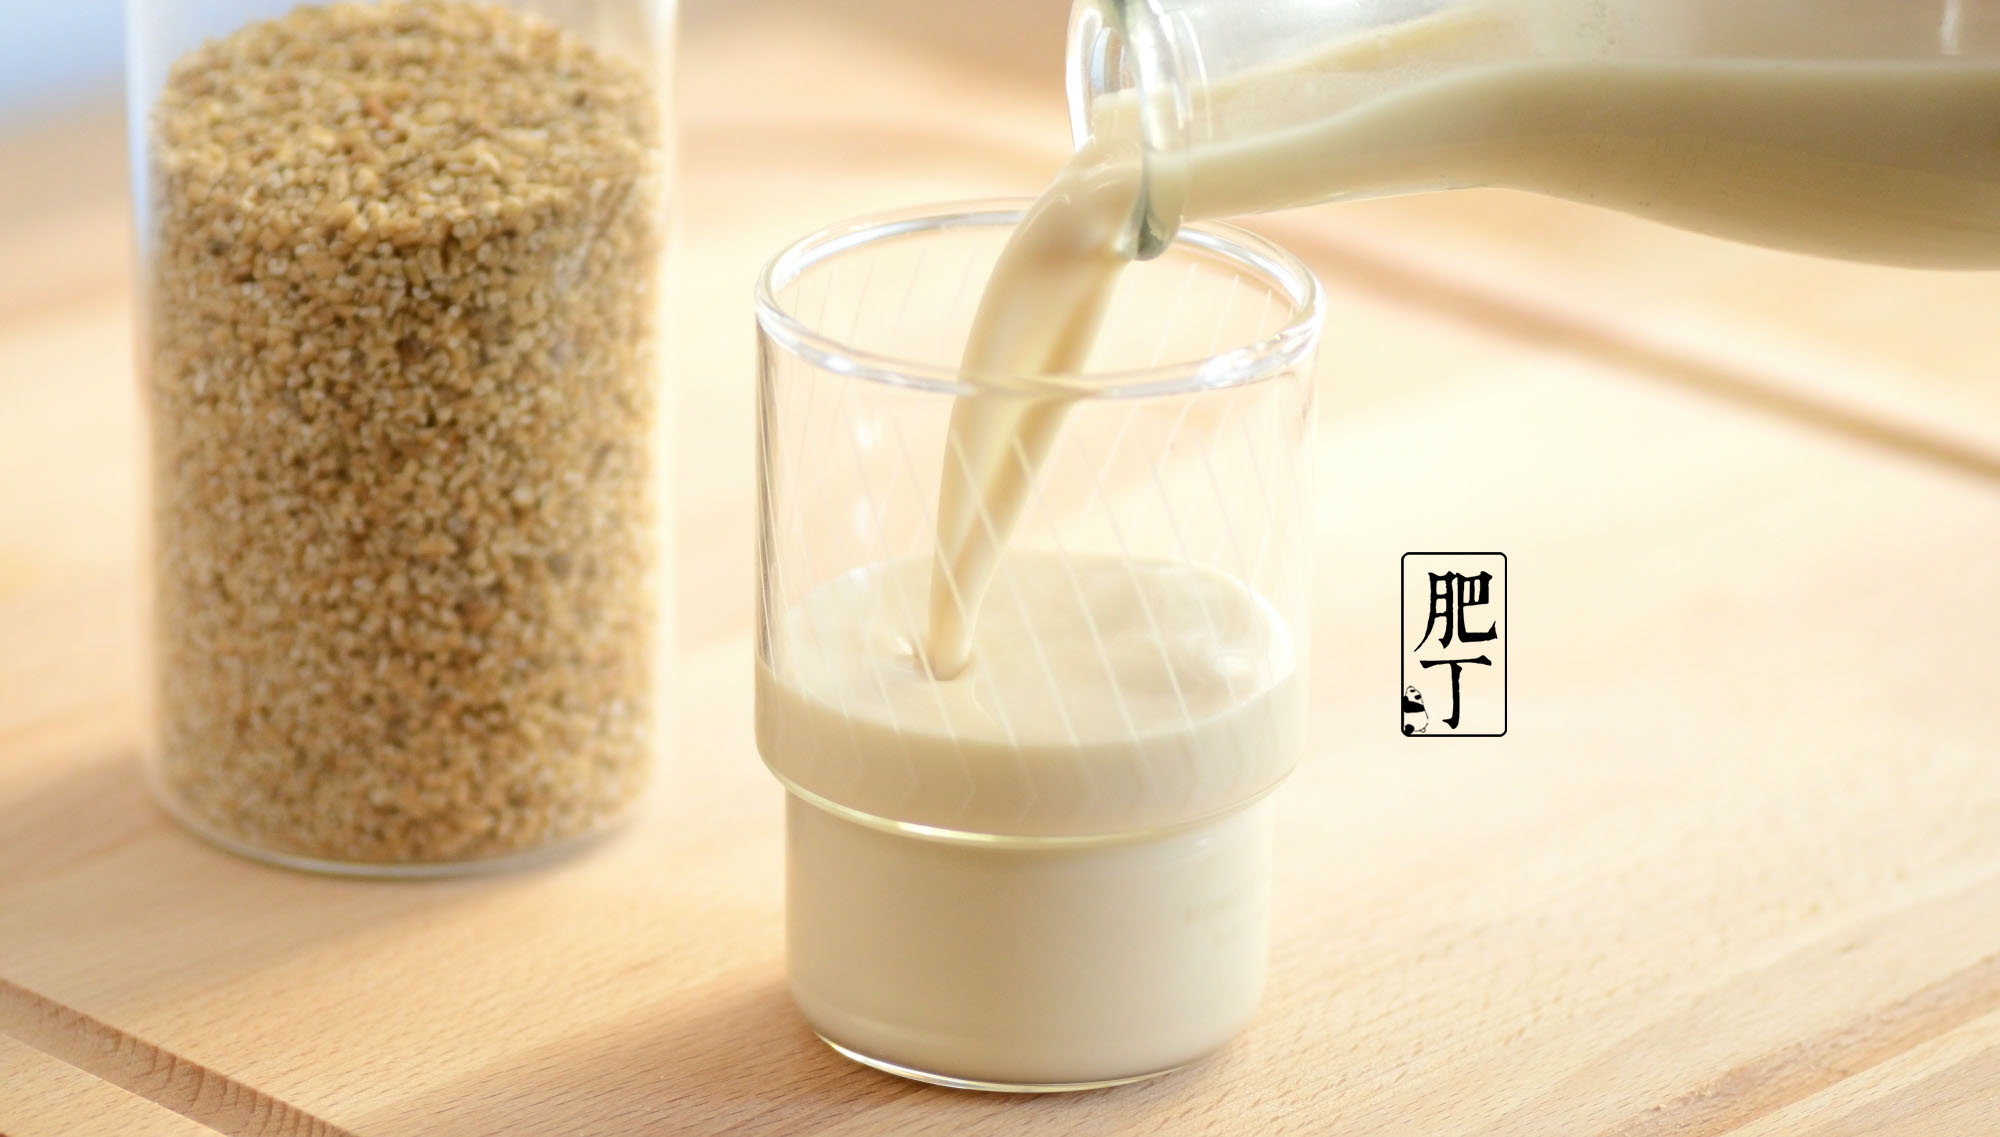 自己做濃醇燕麥奶【燕麥選對了嗎】無黏液   How to make non-slimy oat milk at home